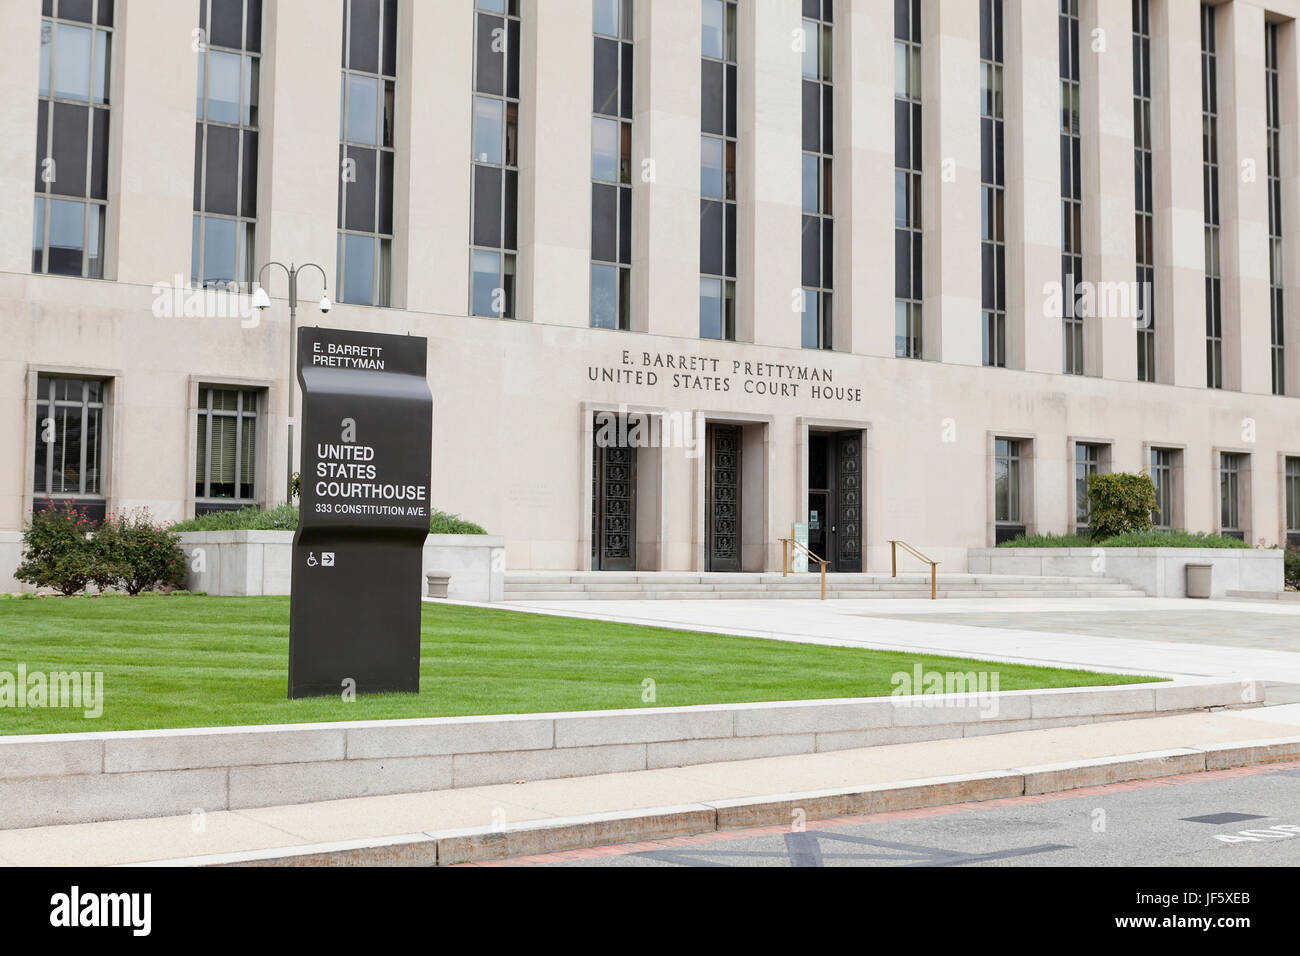 E Barrett Prettyman nosotros edificio de Juzgados (Estados Unidos Court House, el Tribunal Federal, el Tribunal Federal, el Tribunal Federal building) - Washington, DC, EE.UU. Foto de stock